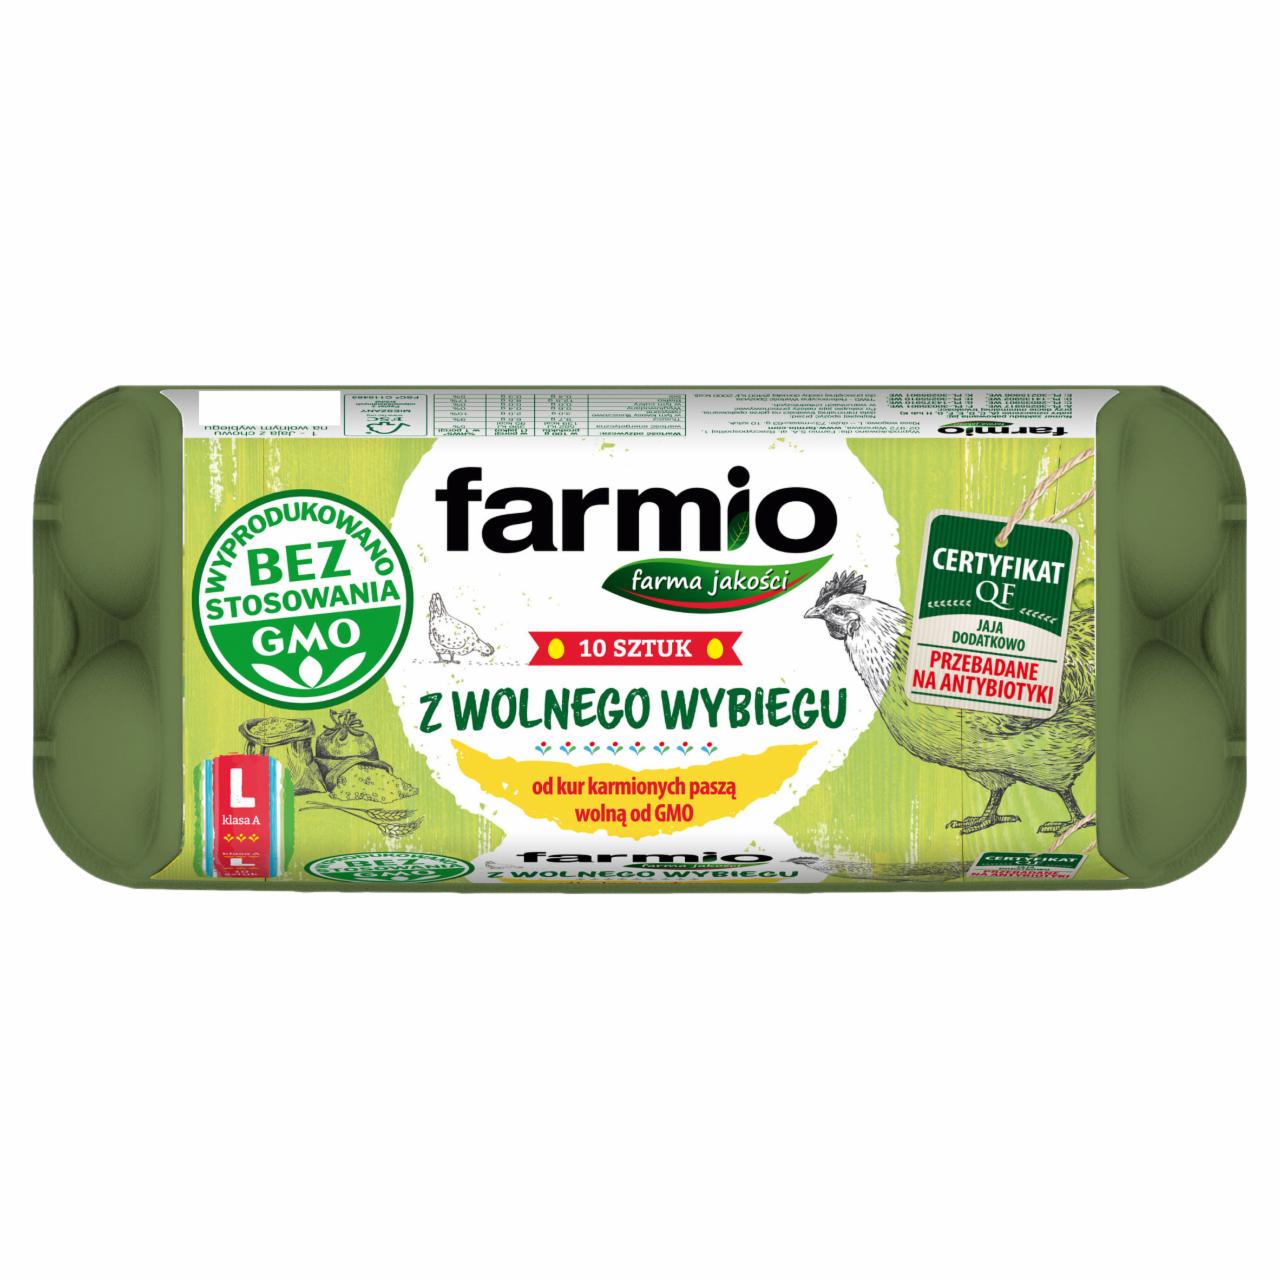 Zdjęcia - Farmio Jaja z wolnego wybiegu od kur karmionych paszą wolną od GMO L 10 sztuk